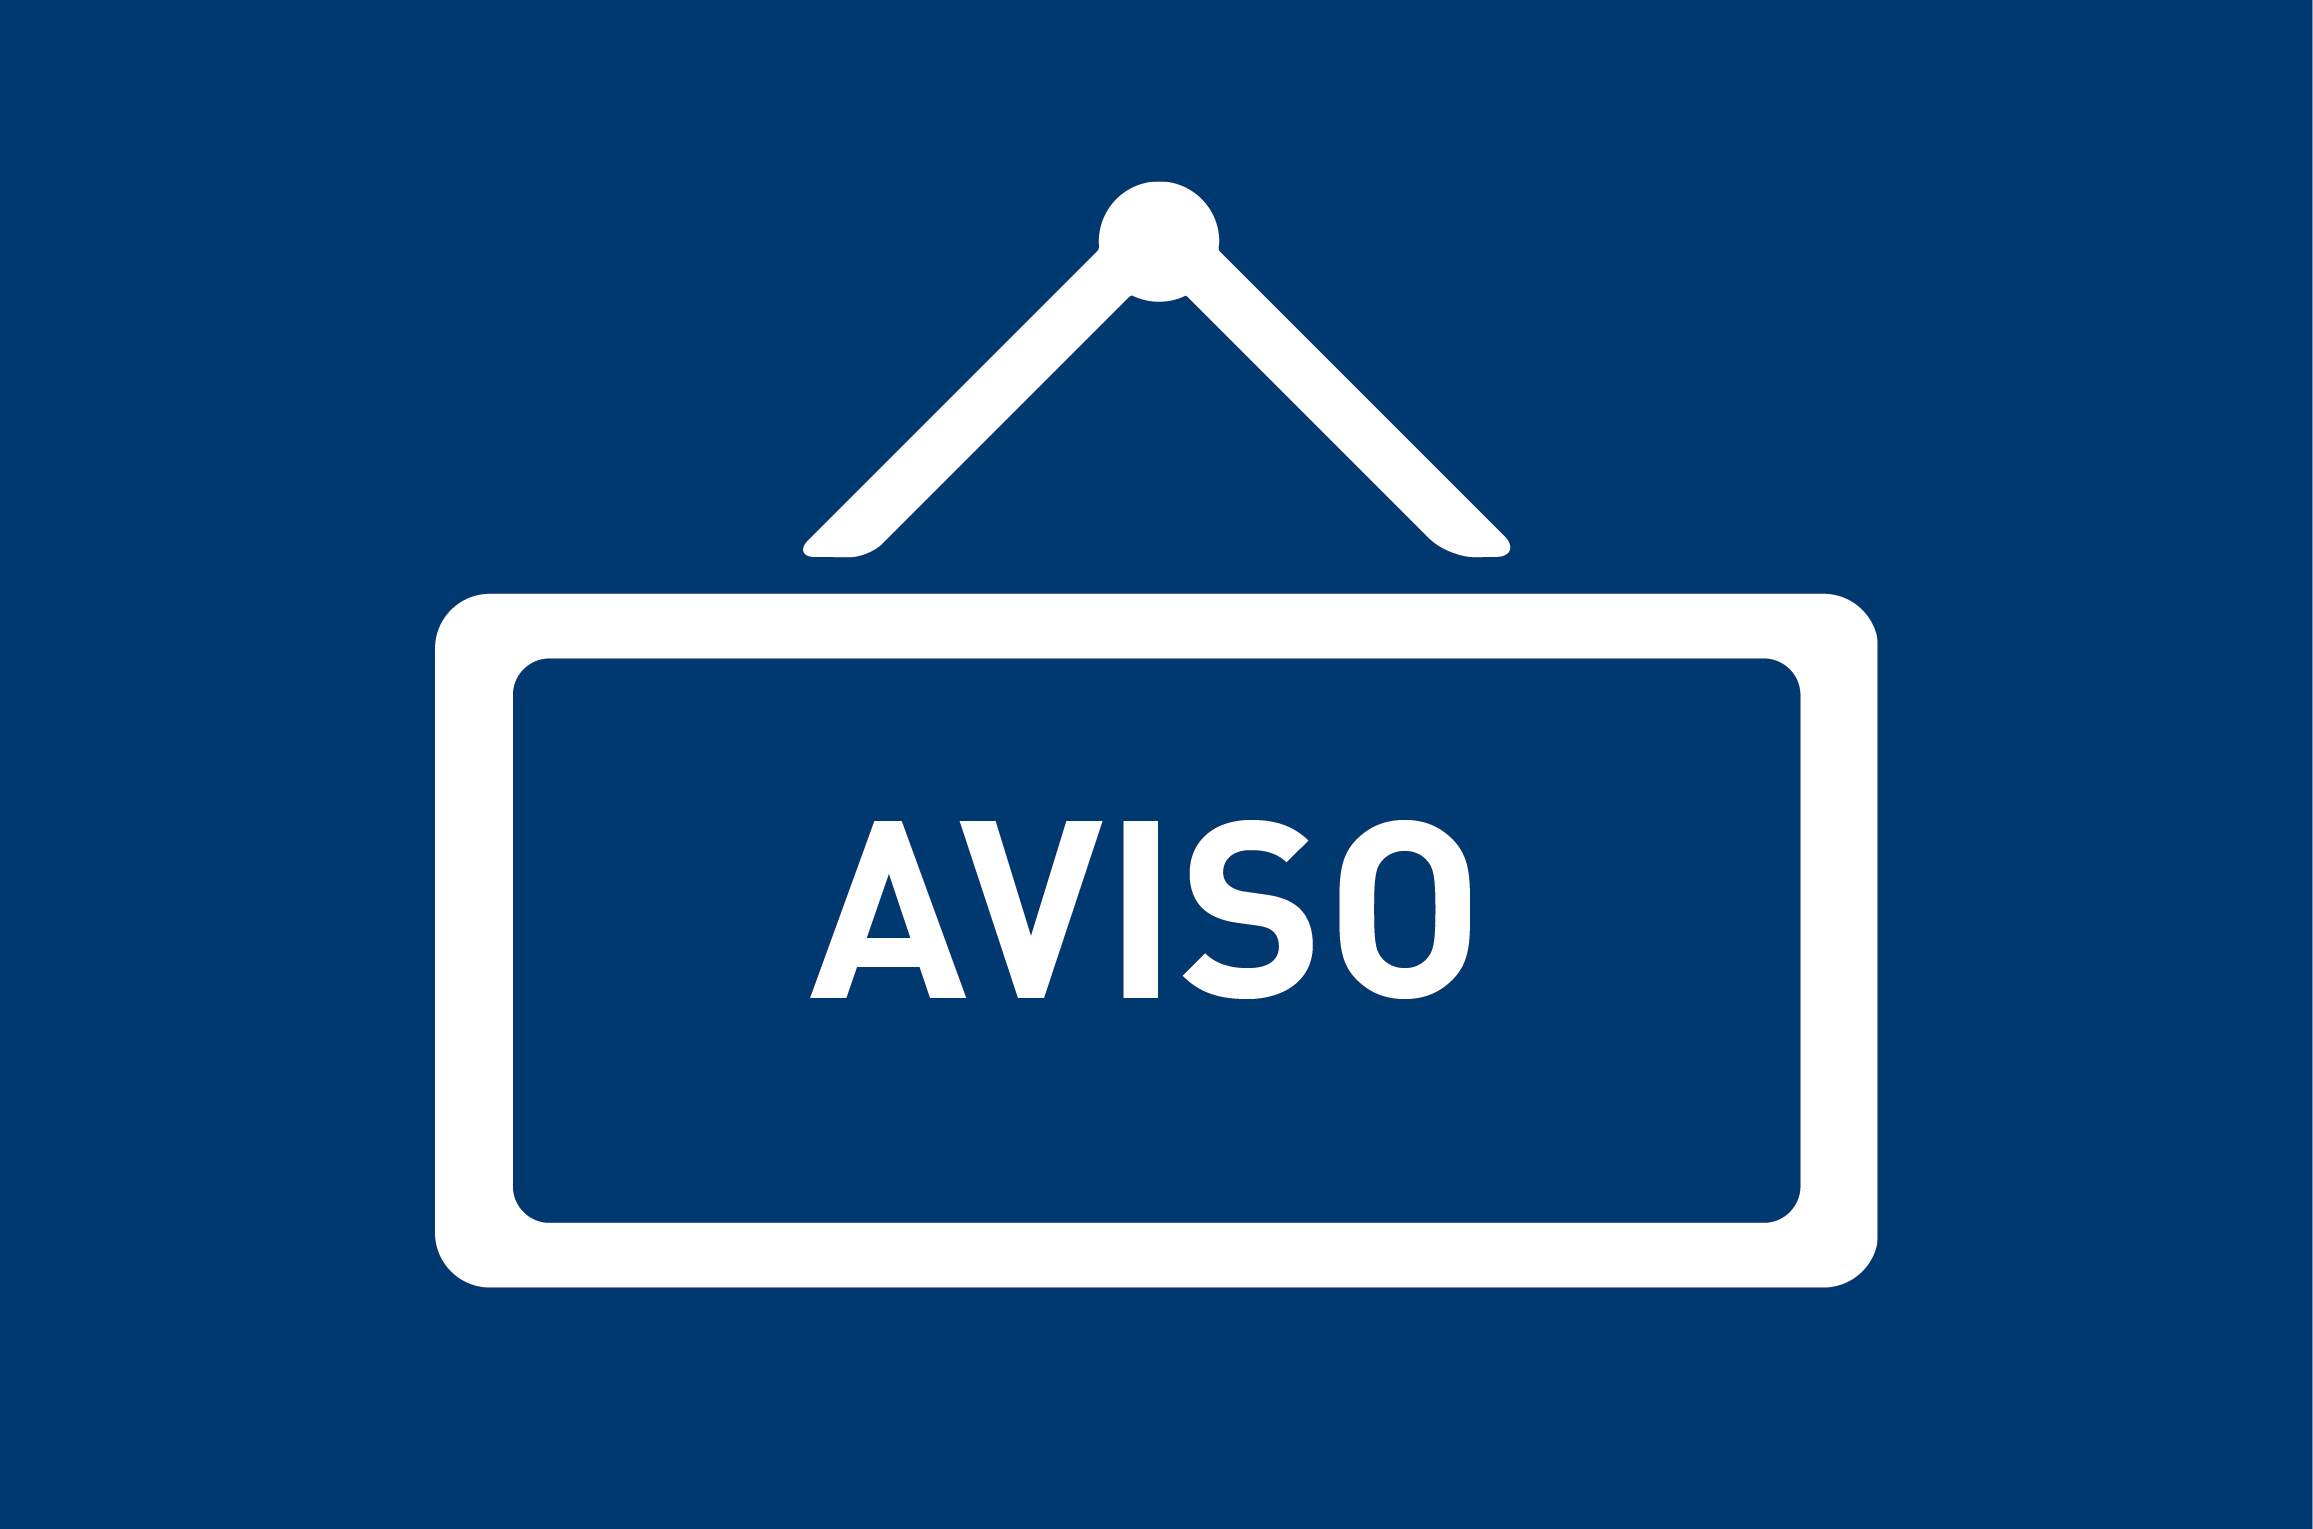 Cartel de aviso, de fondo azul y un recuadro en blanco con la palabra Aviso.